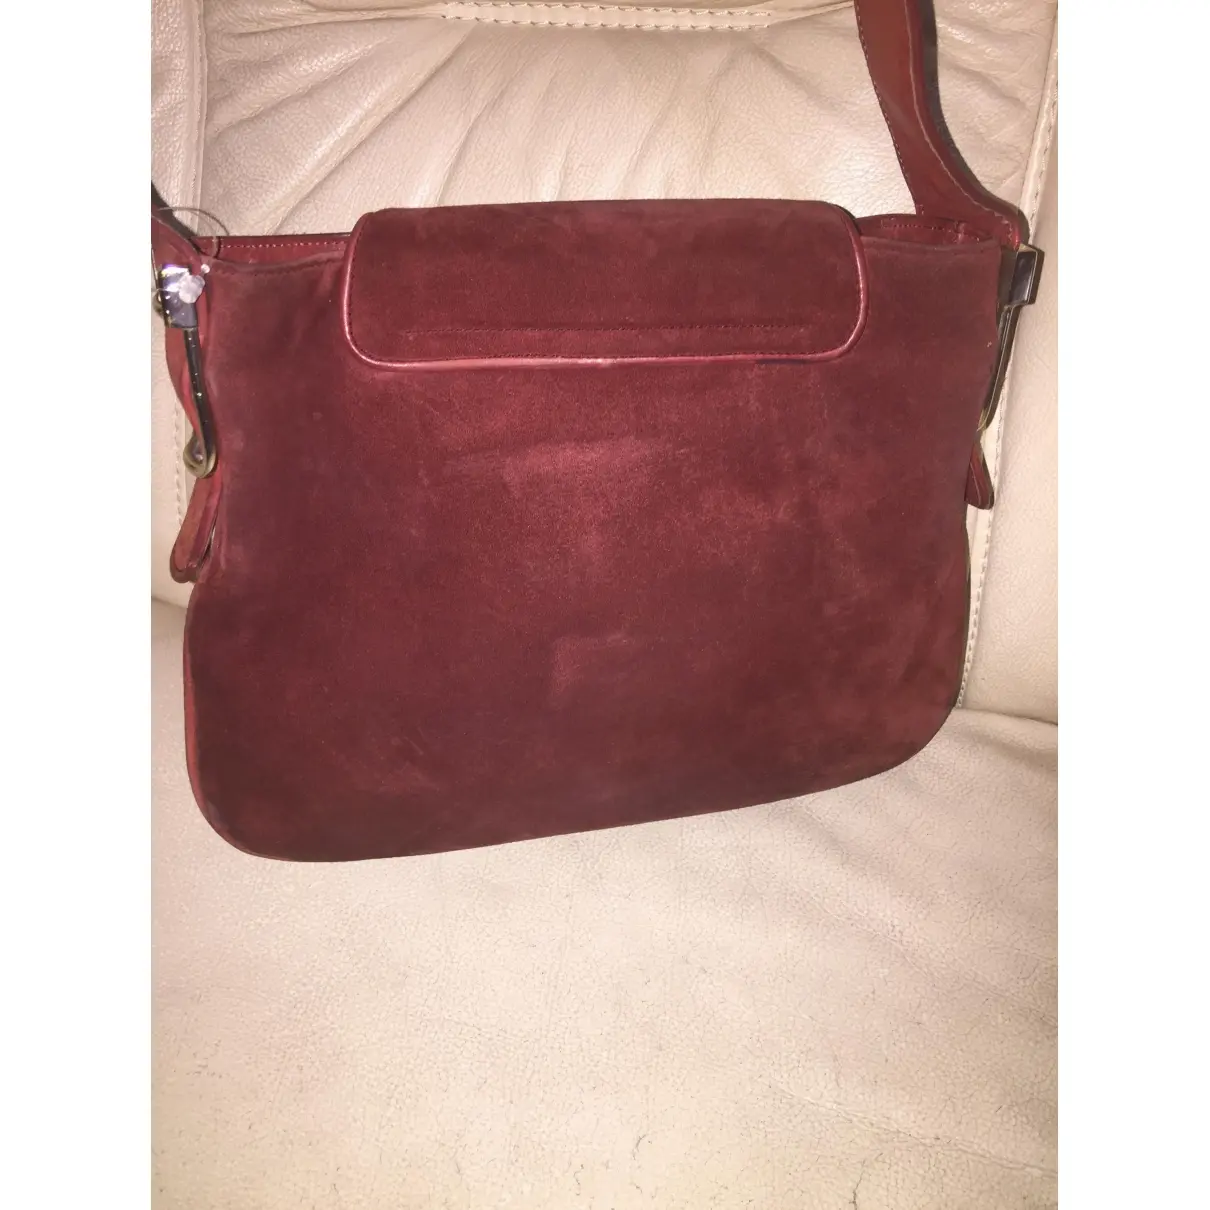 Buy Gucci 1973 handbag online